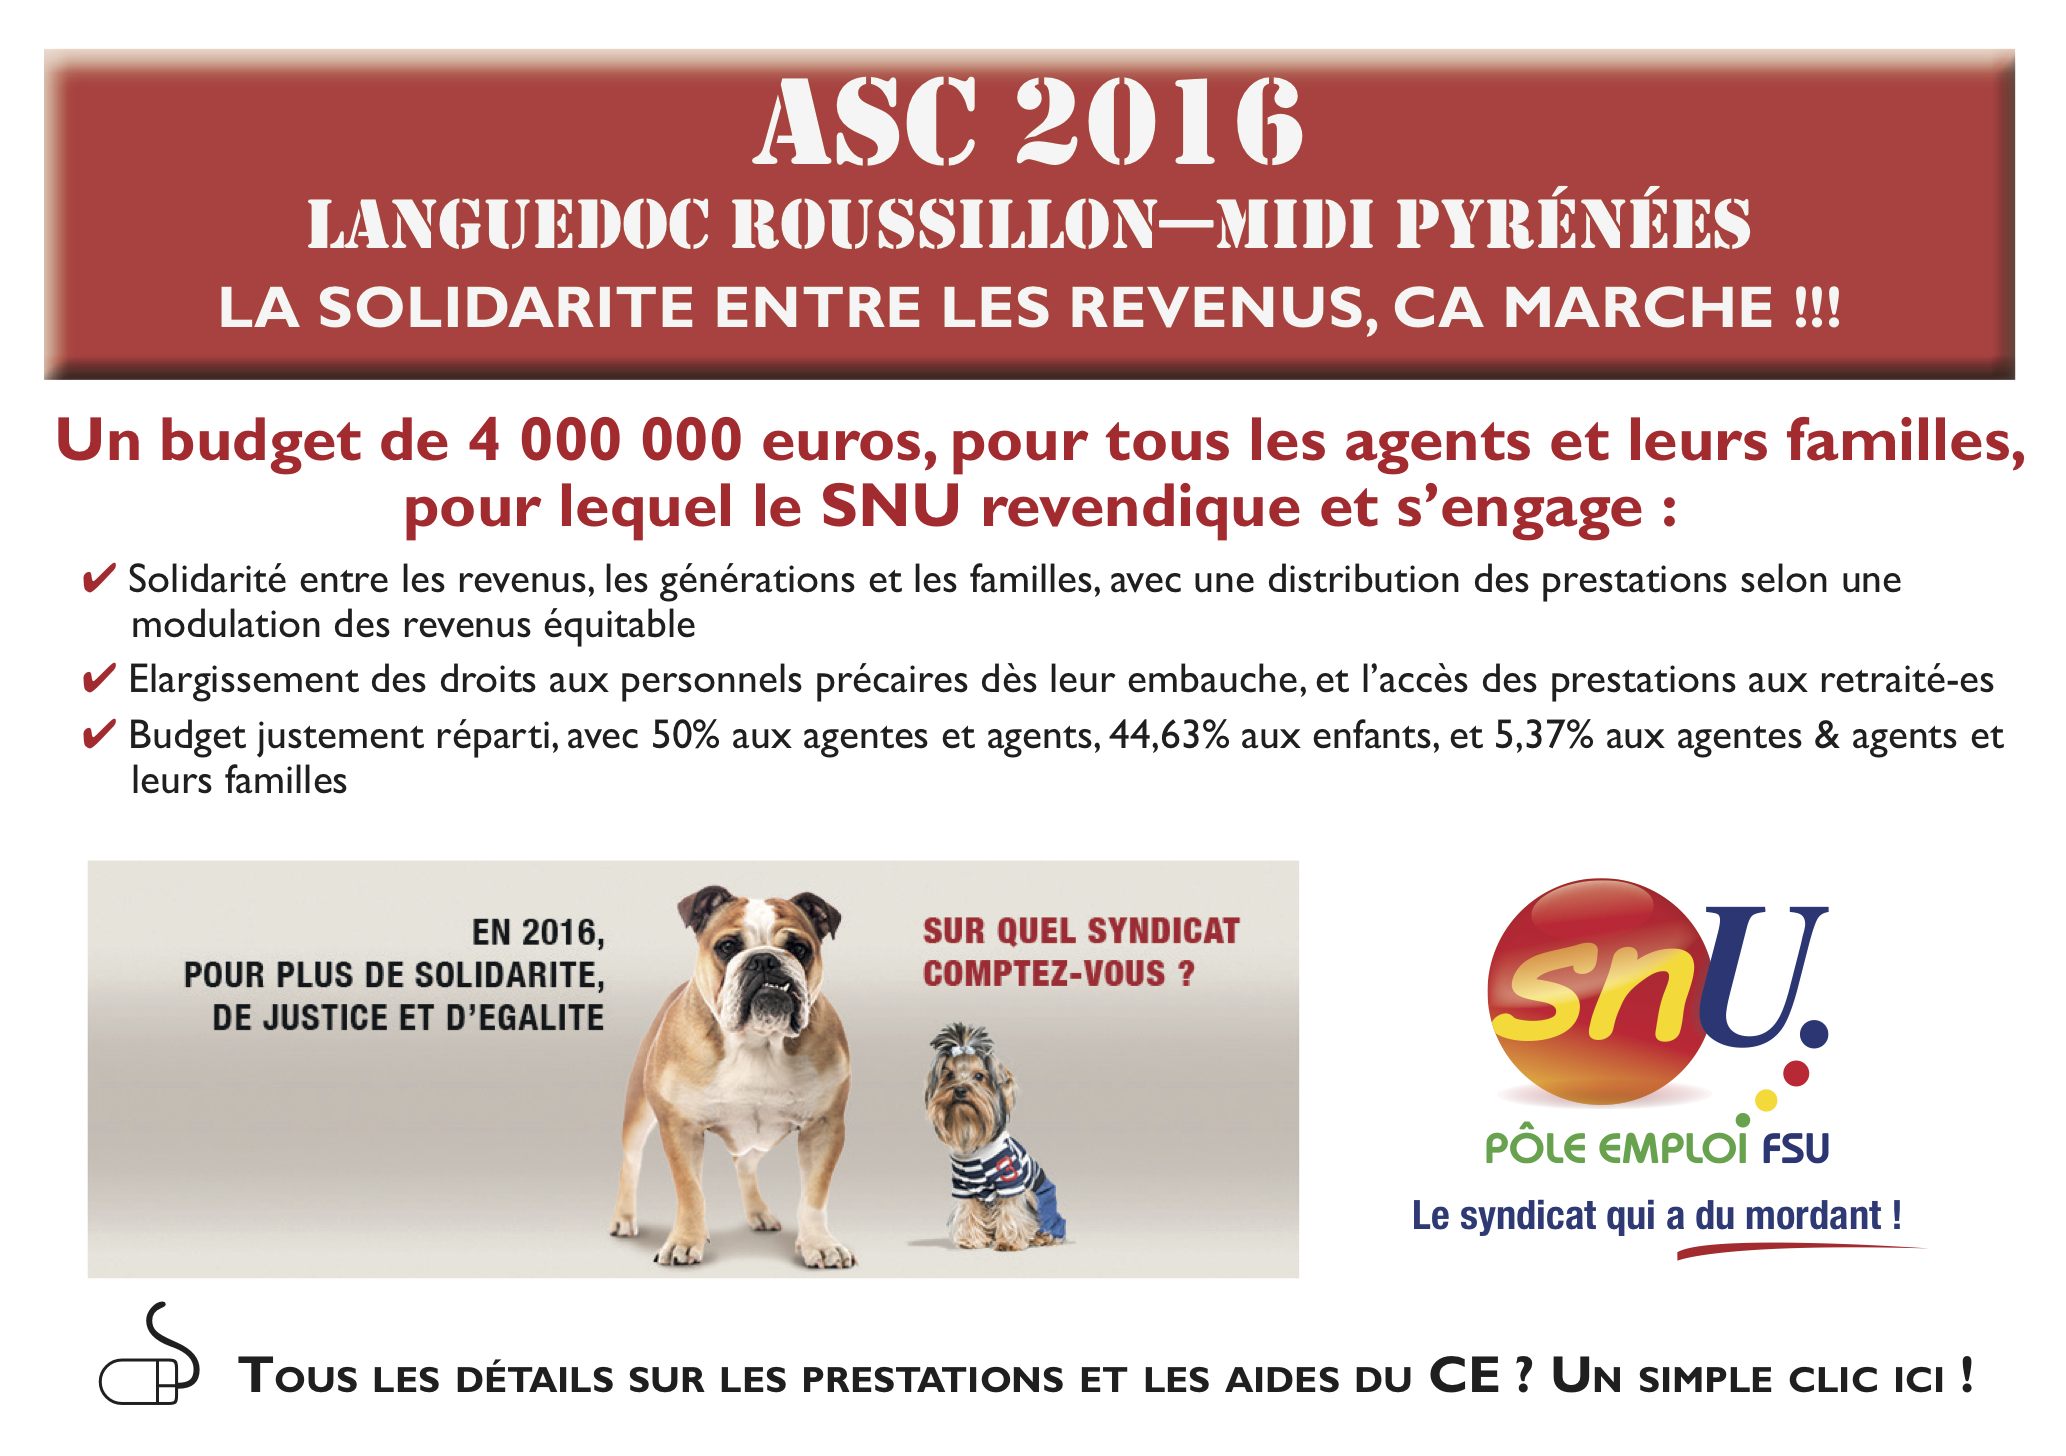 ASC 2016 Languedoc Roussillon Midi Pyrénées, la solidarité entre les revenus ça marche !!!